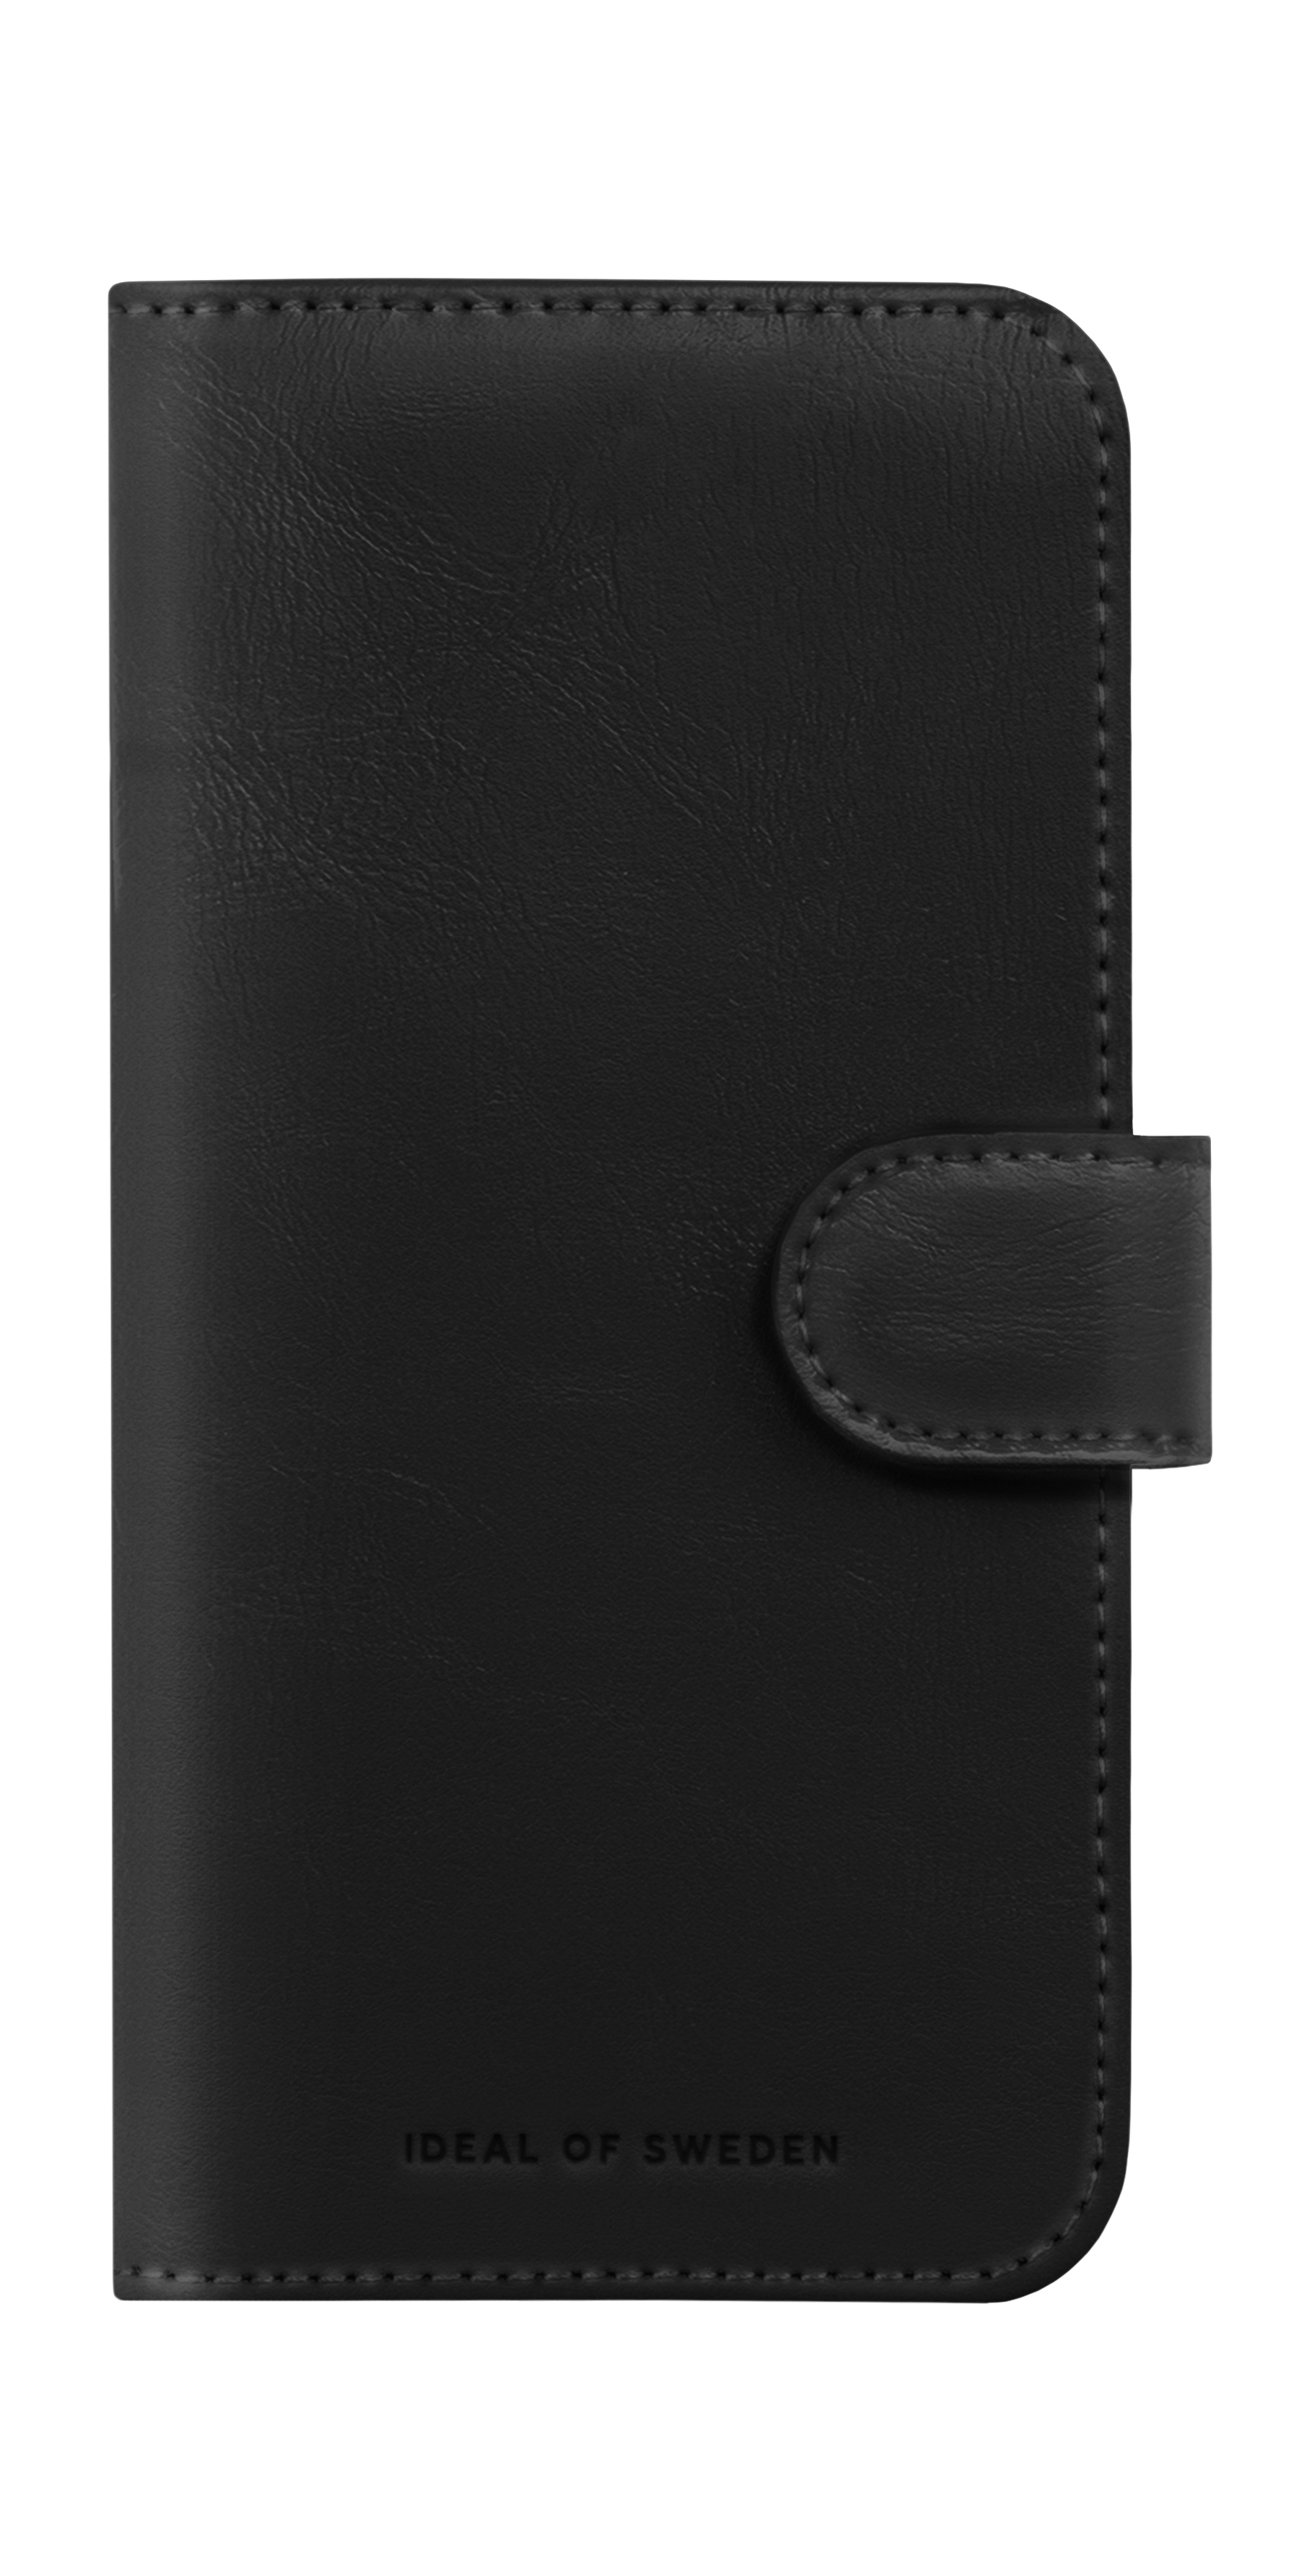 IDEAL Wallet+, Apple, 15, OF Magnet Black iPhone Bookcover, SWEDEN